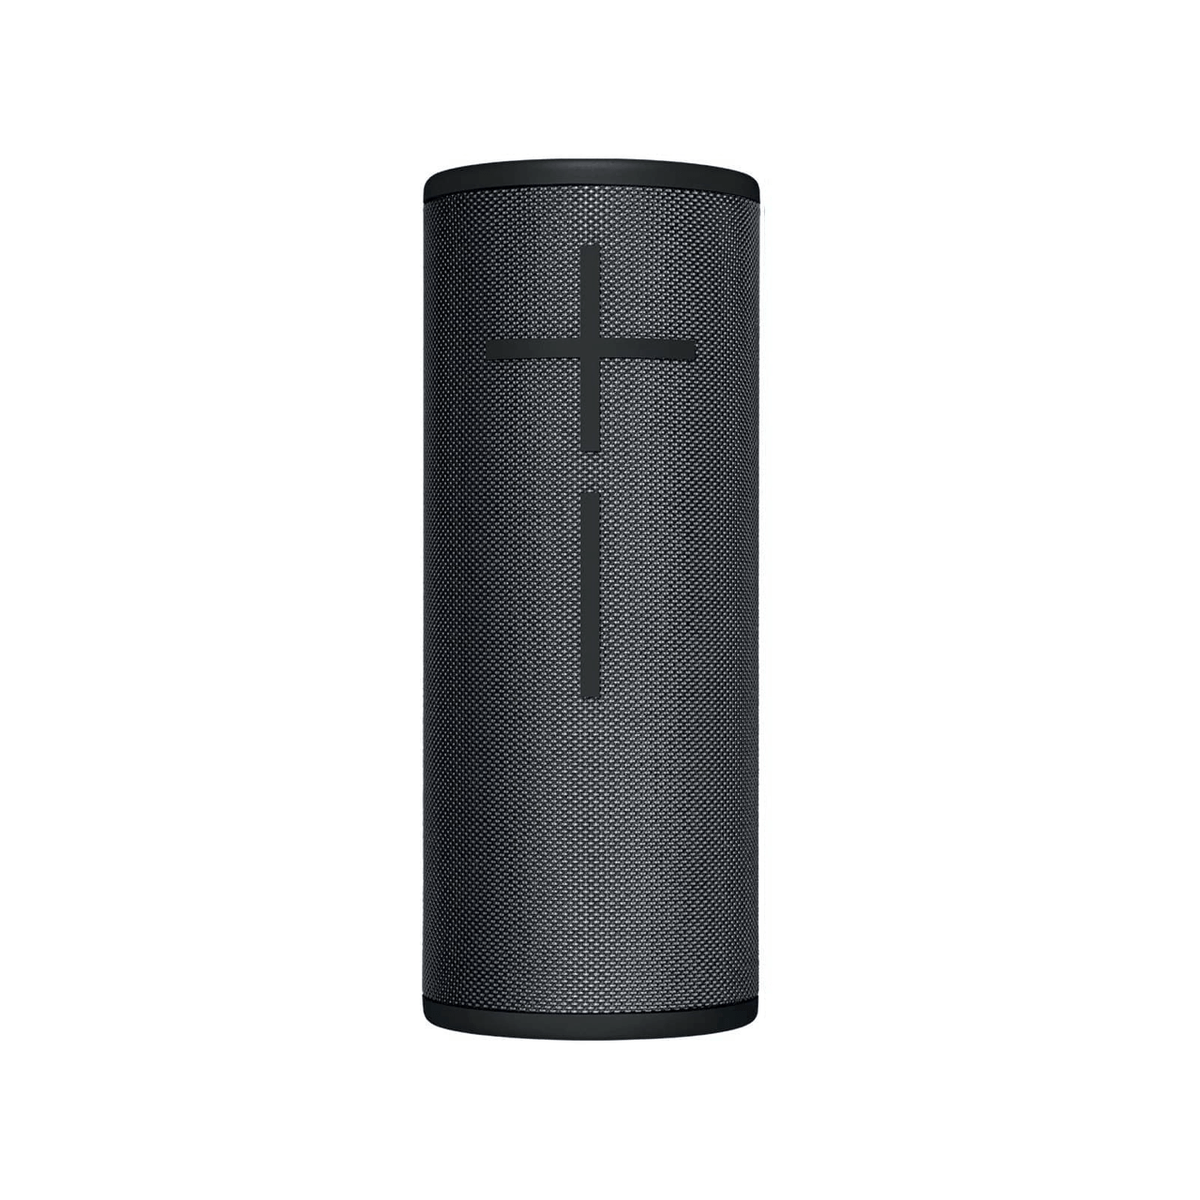 Marshall Acton III Bluetooth Speaker System (Black) 1006008 B&H